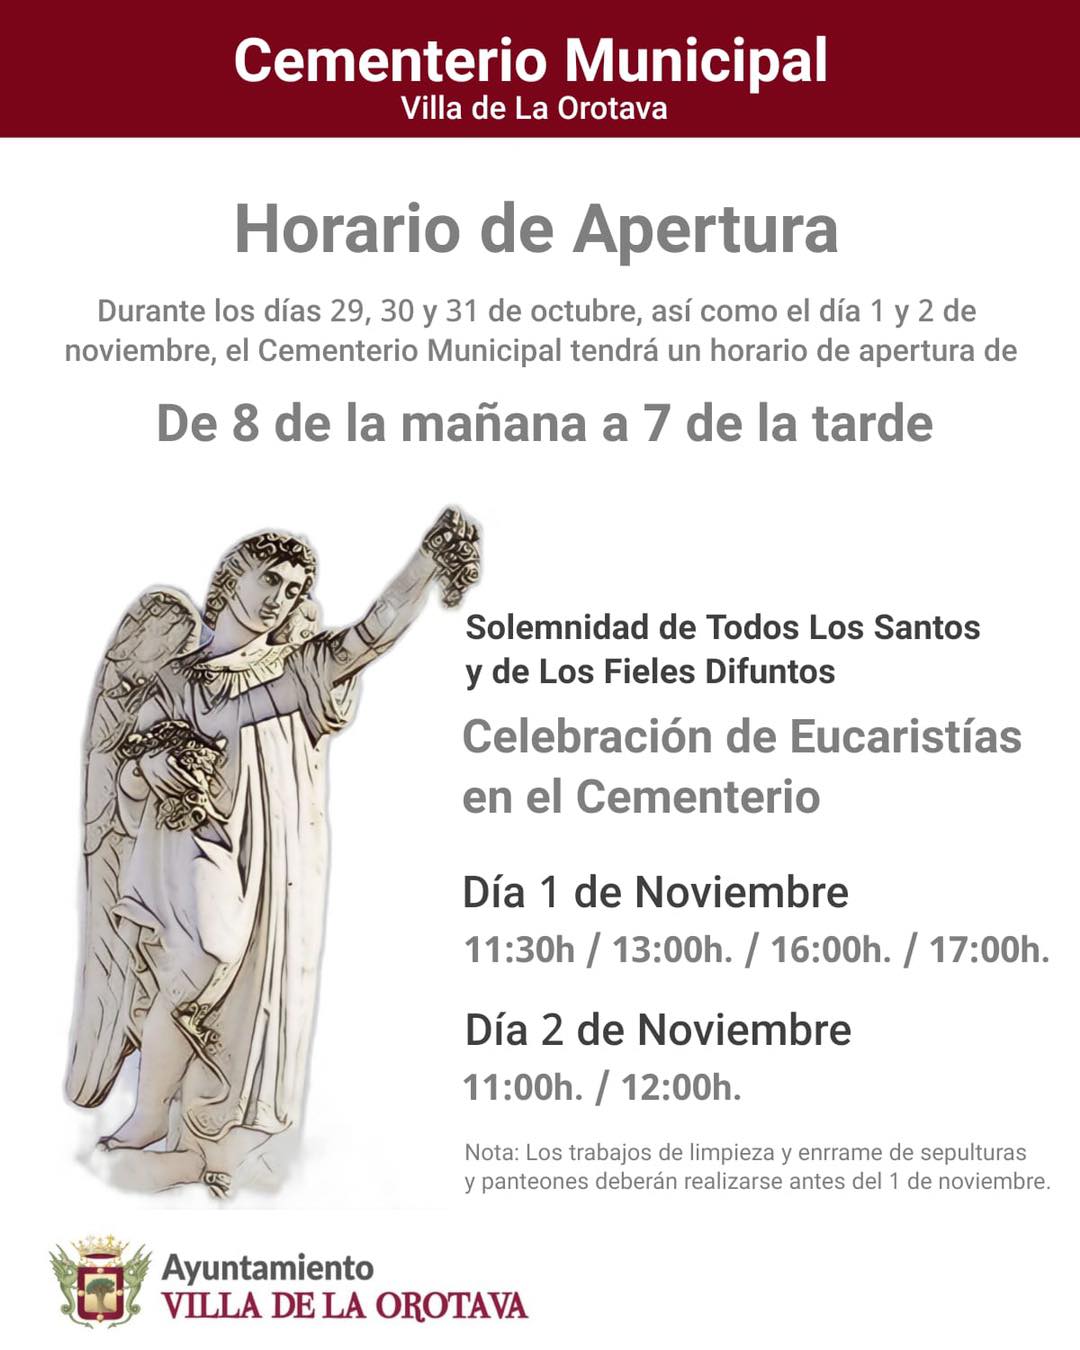 Horario Cementerio Municipal por el dia de Todos los Santos